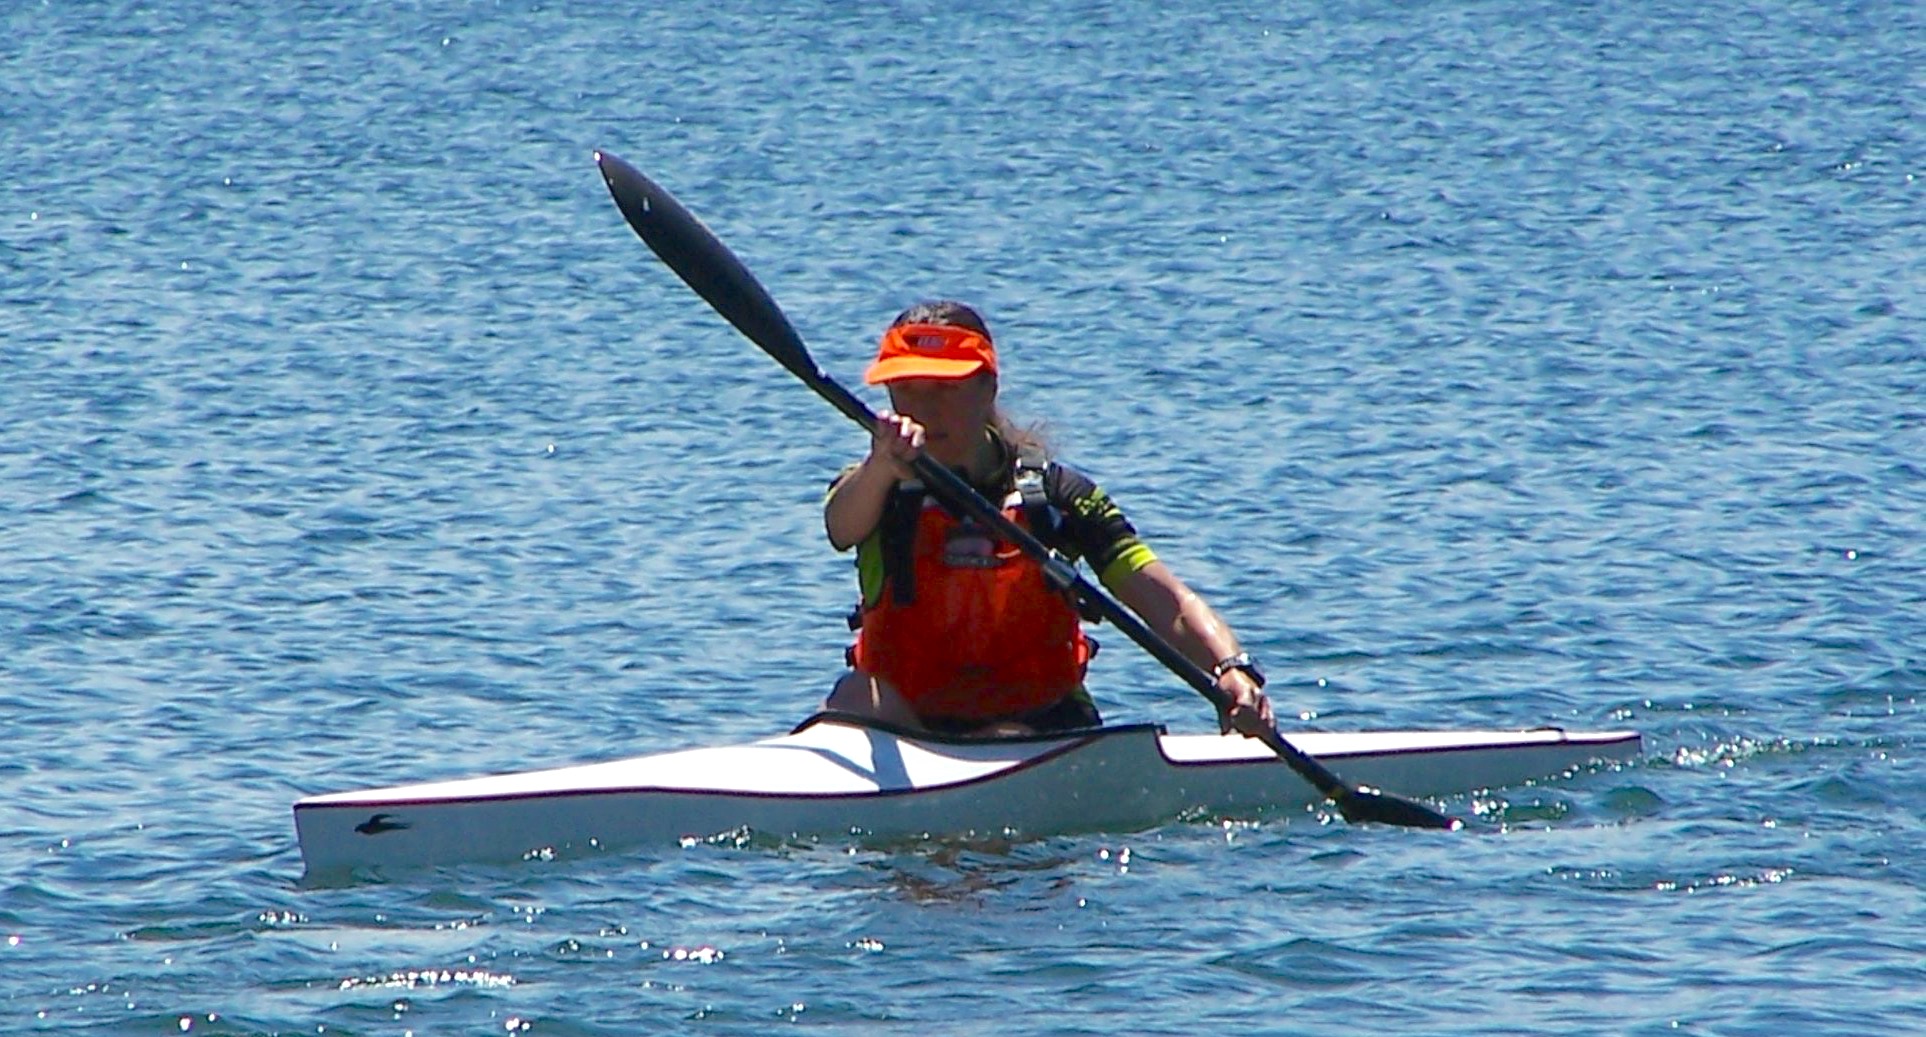 maria paddling her way to win kvc 18